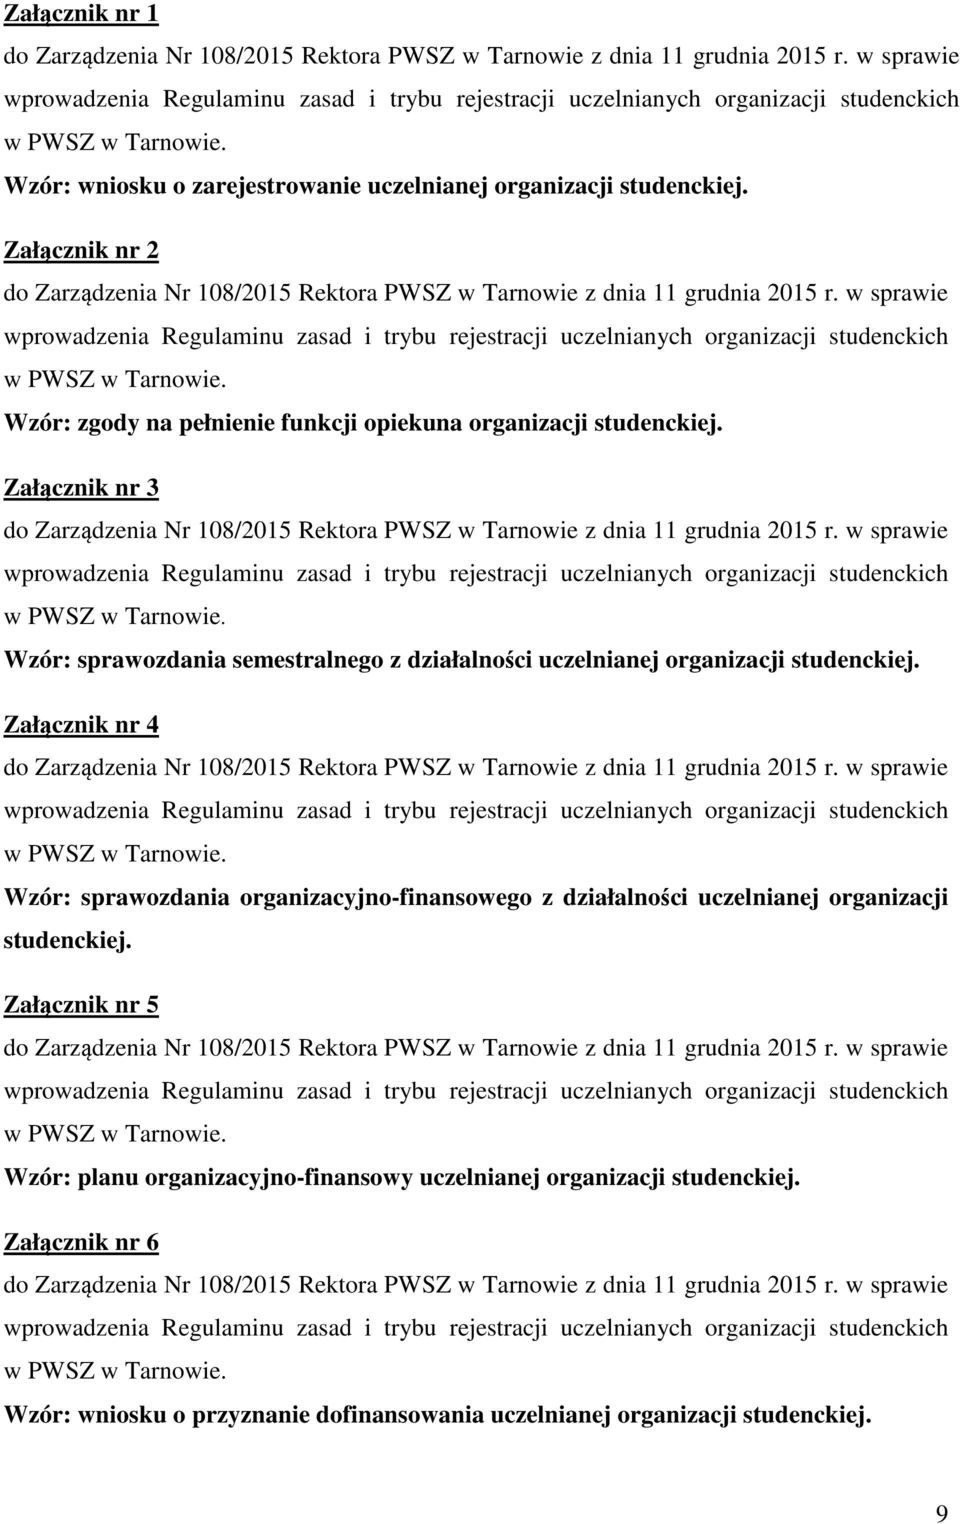 Załącznik nr 3 Wzór: sprawozdania semestralnego z działalności uczelnianej organizacji studenckiej.